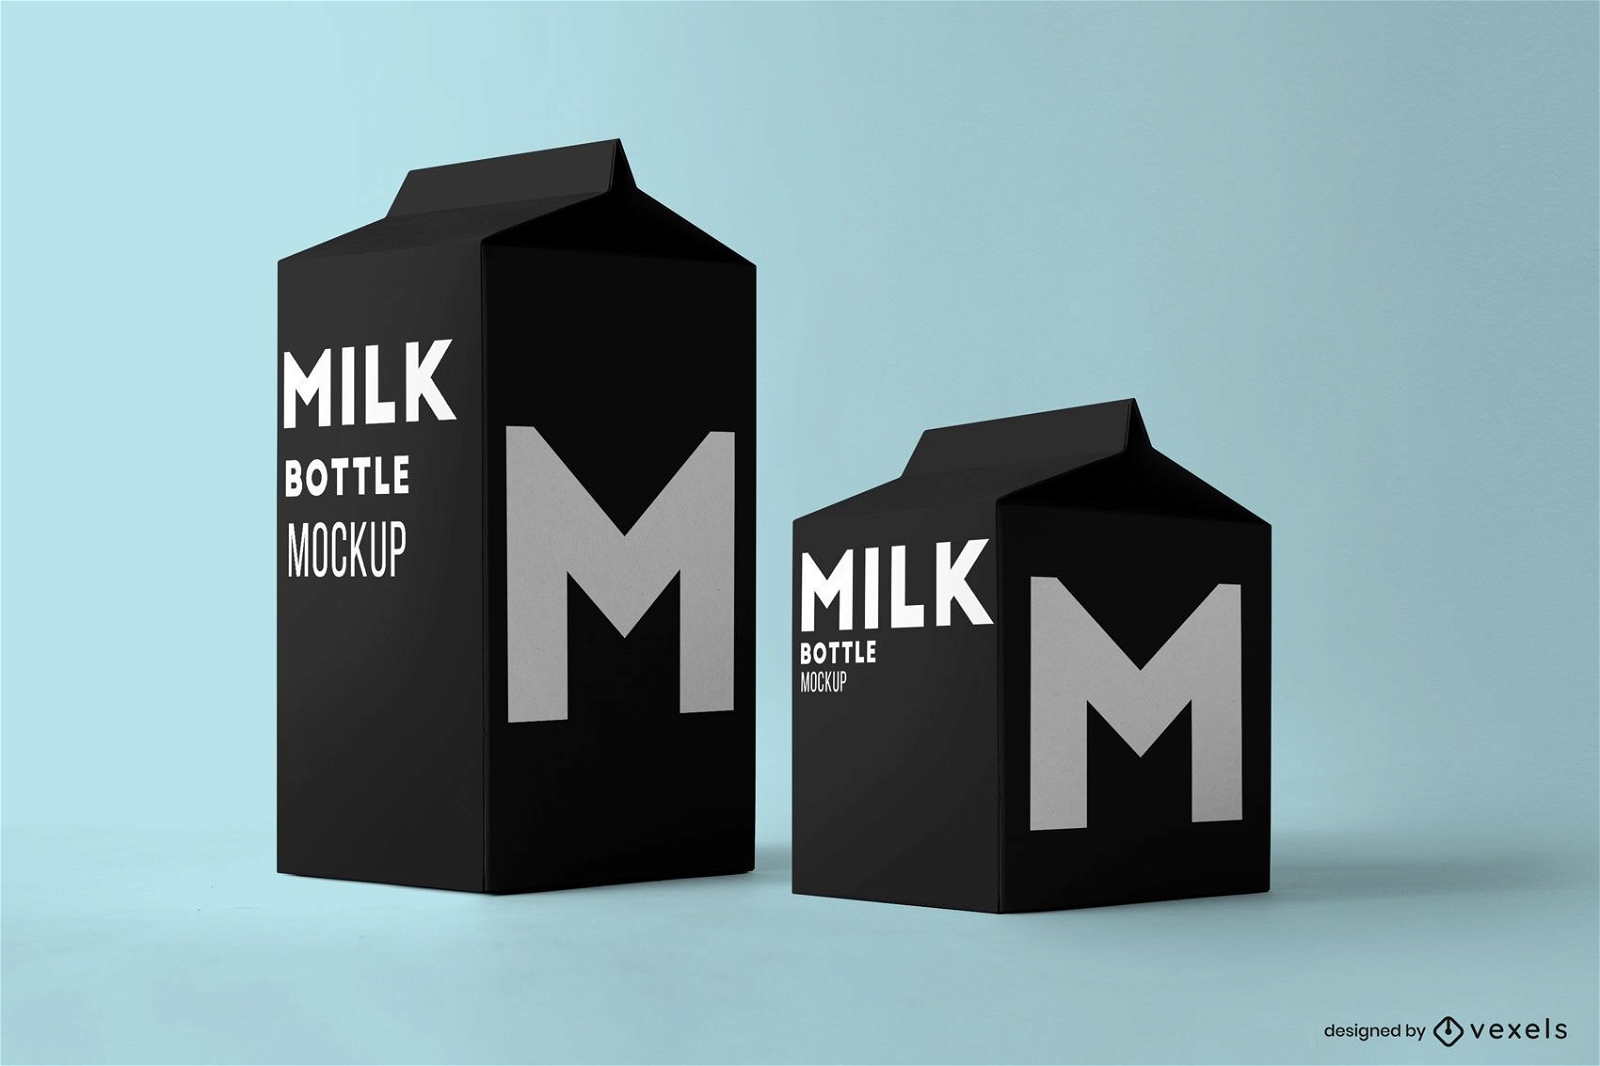 Mockup-Design der Milchkartons